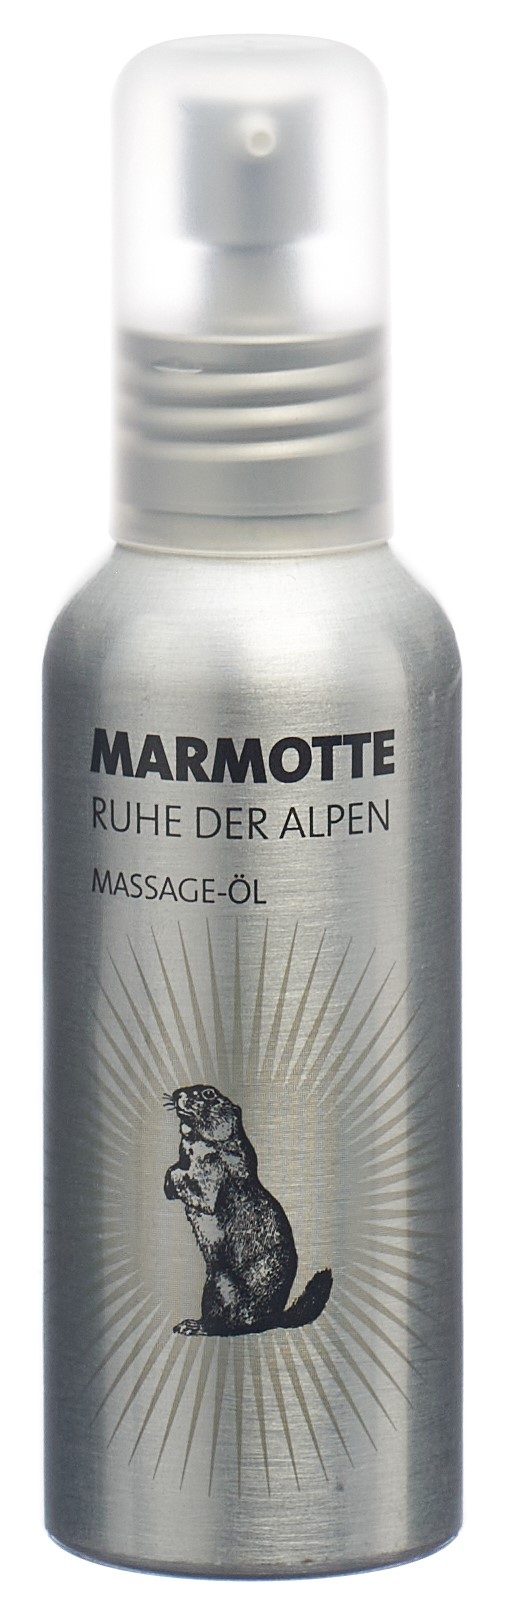 Marmotte Massageöl